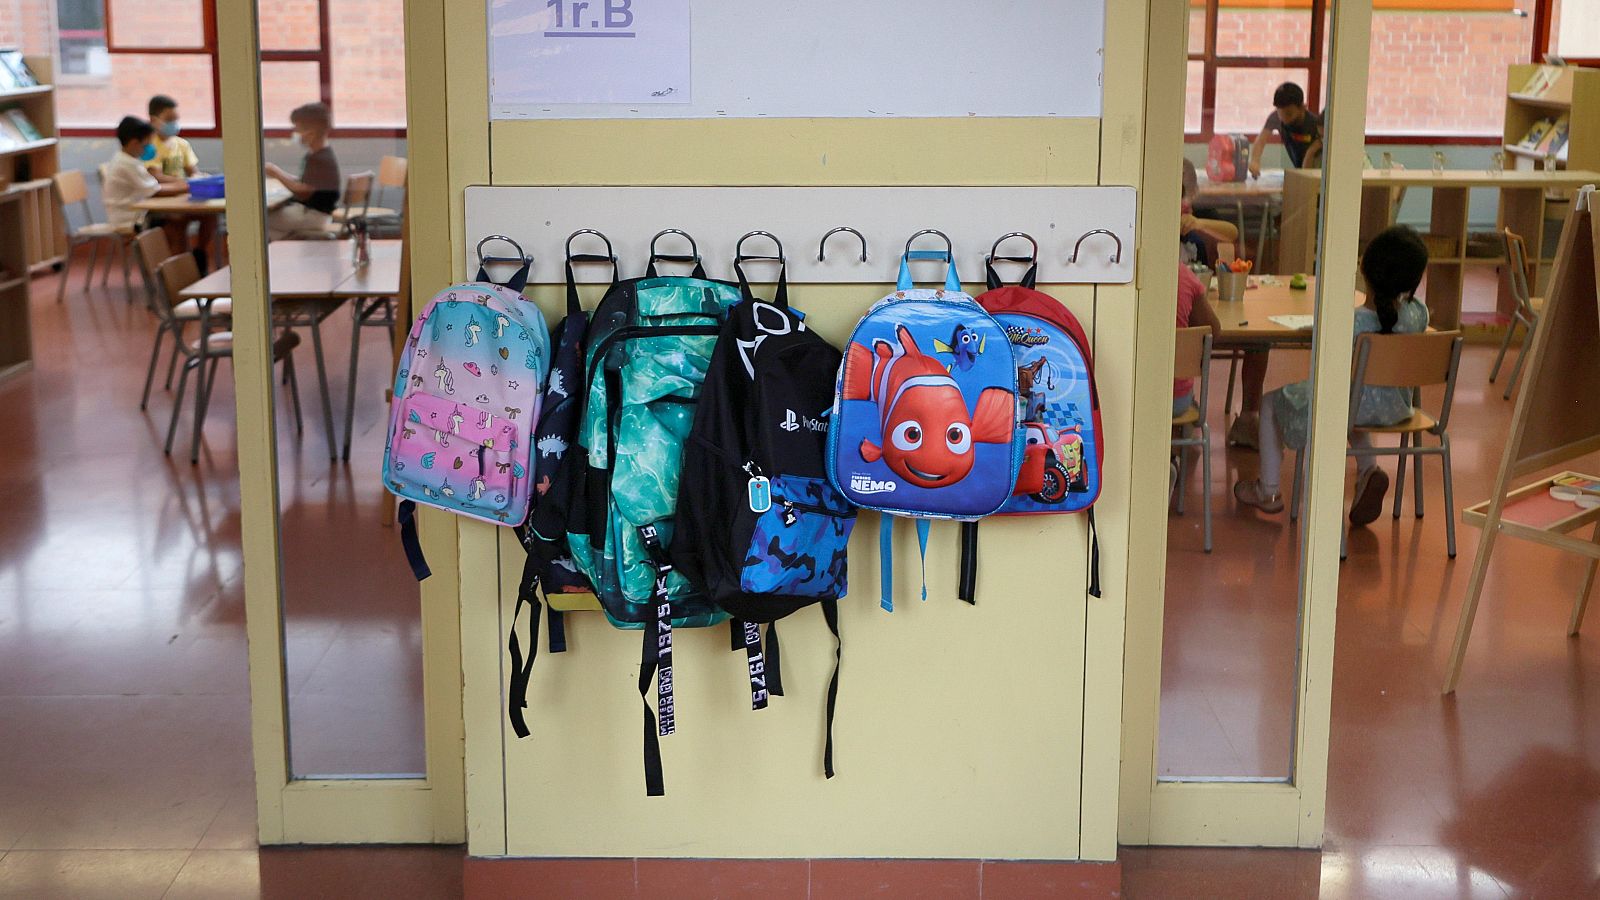 Entrada a un aula d eun colegio d eprimaria. En la pared se ven cuatro mochilas on dibujos animados decorativos colgadas de la pared.